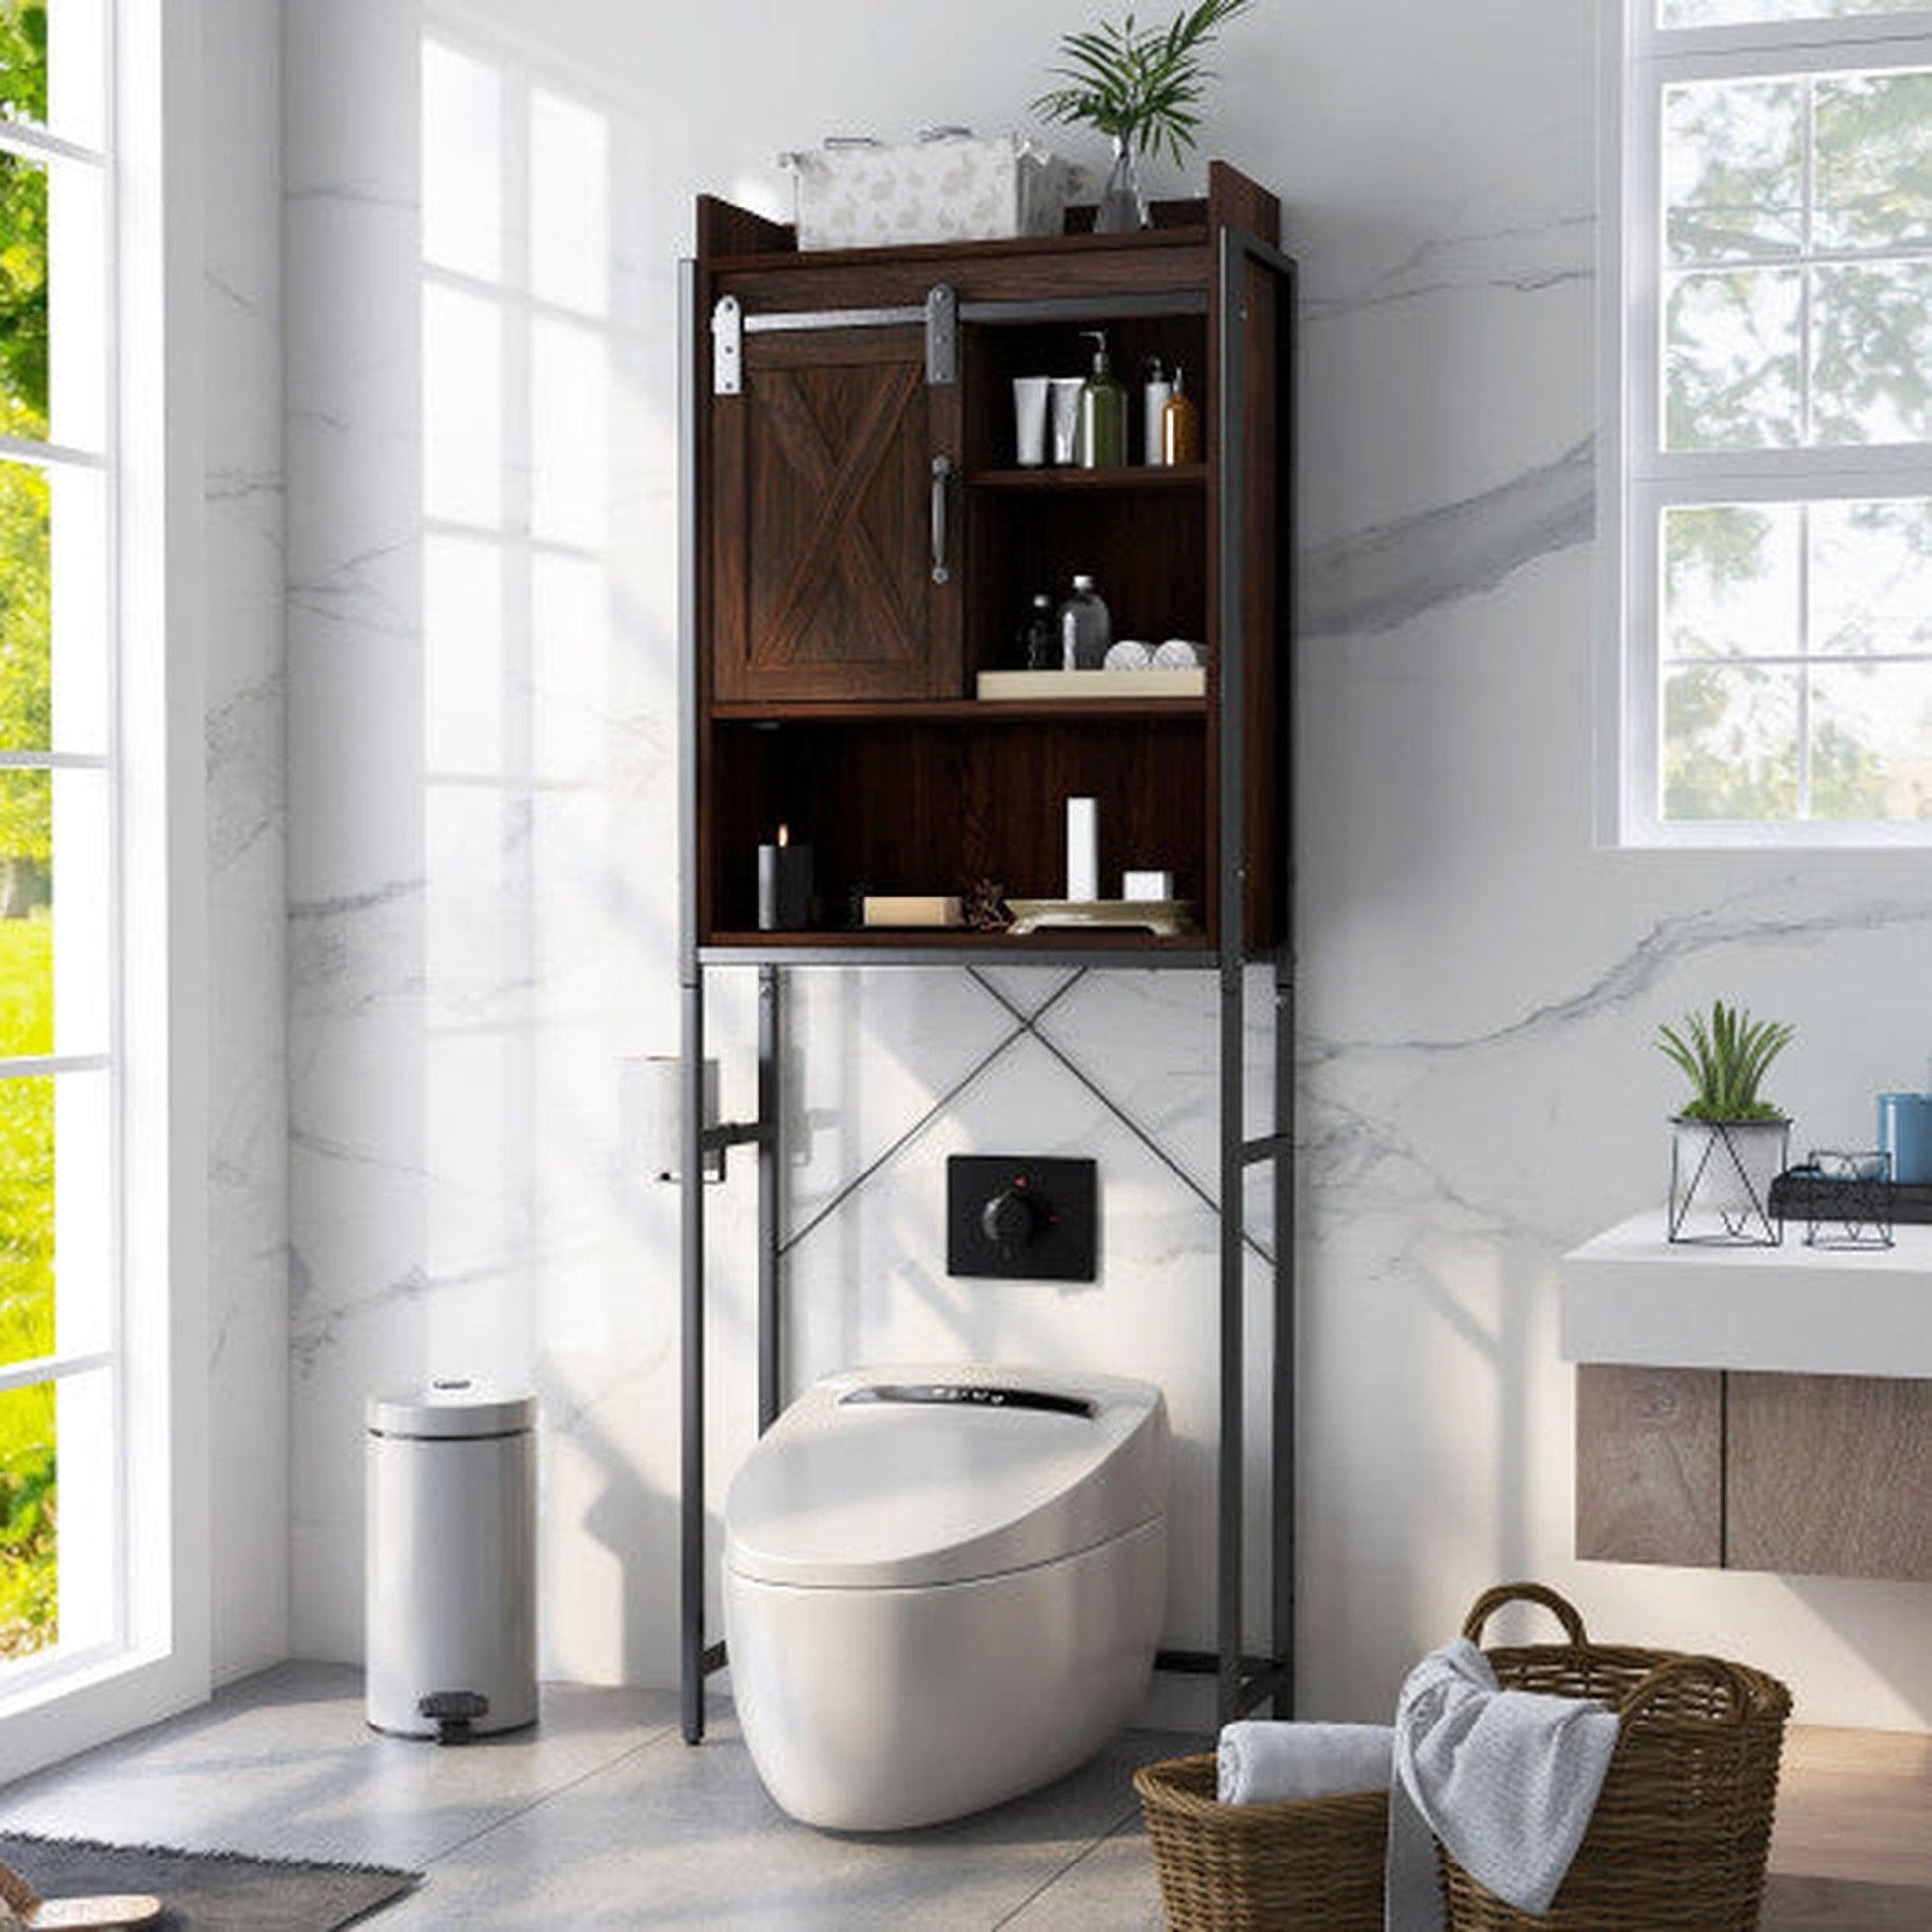 https://usbathstore.com/cdn/shop/files/Costway-4-Tier-Multifunctional-Toilet-Sorage-Cabinet-with-Adjustable-Shelf-and-Sliding-Barn-Door.jpg?v=1699893351&width=1946